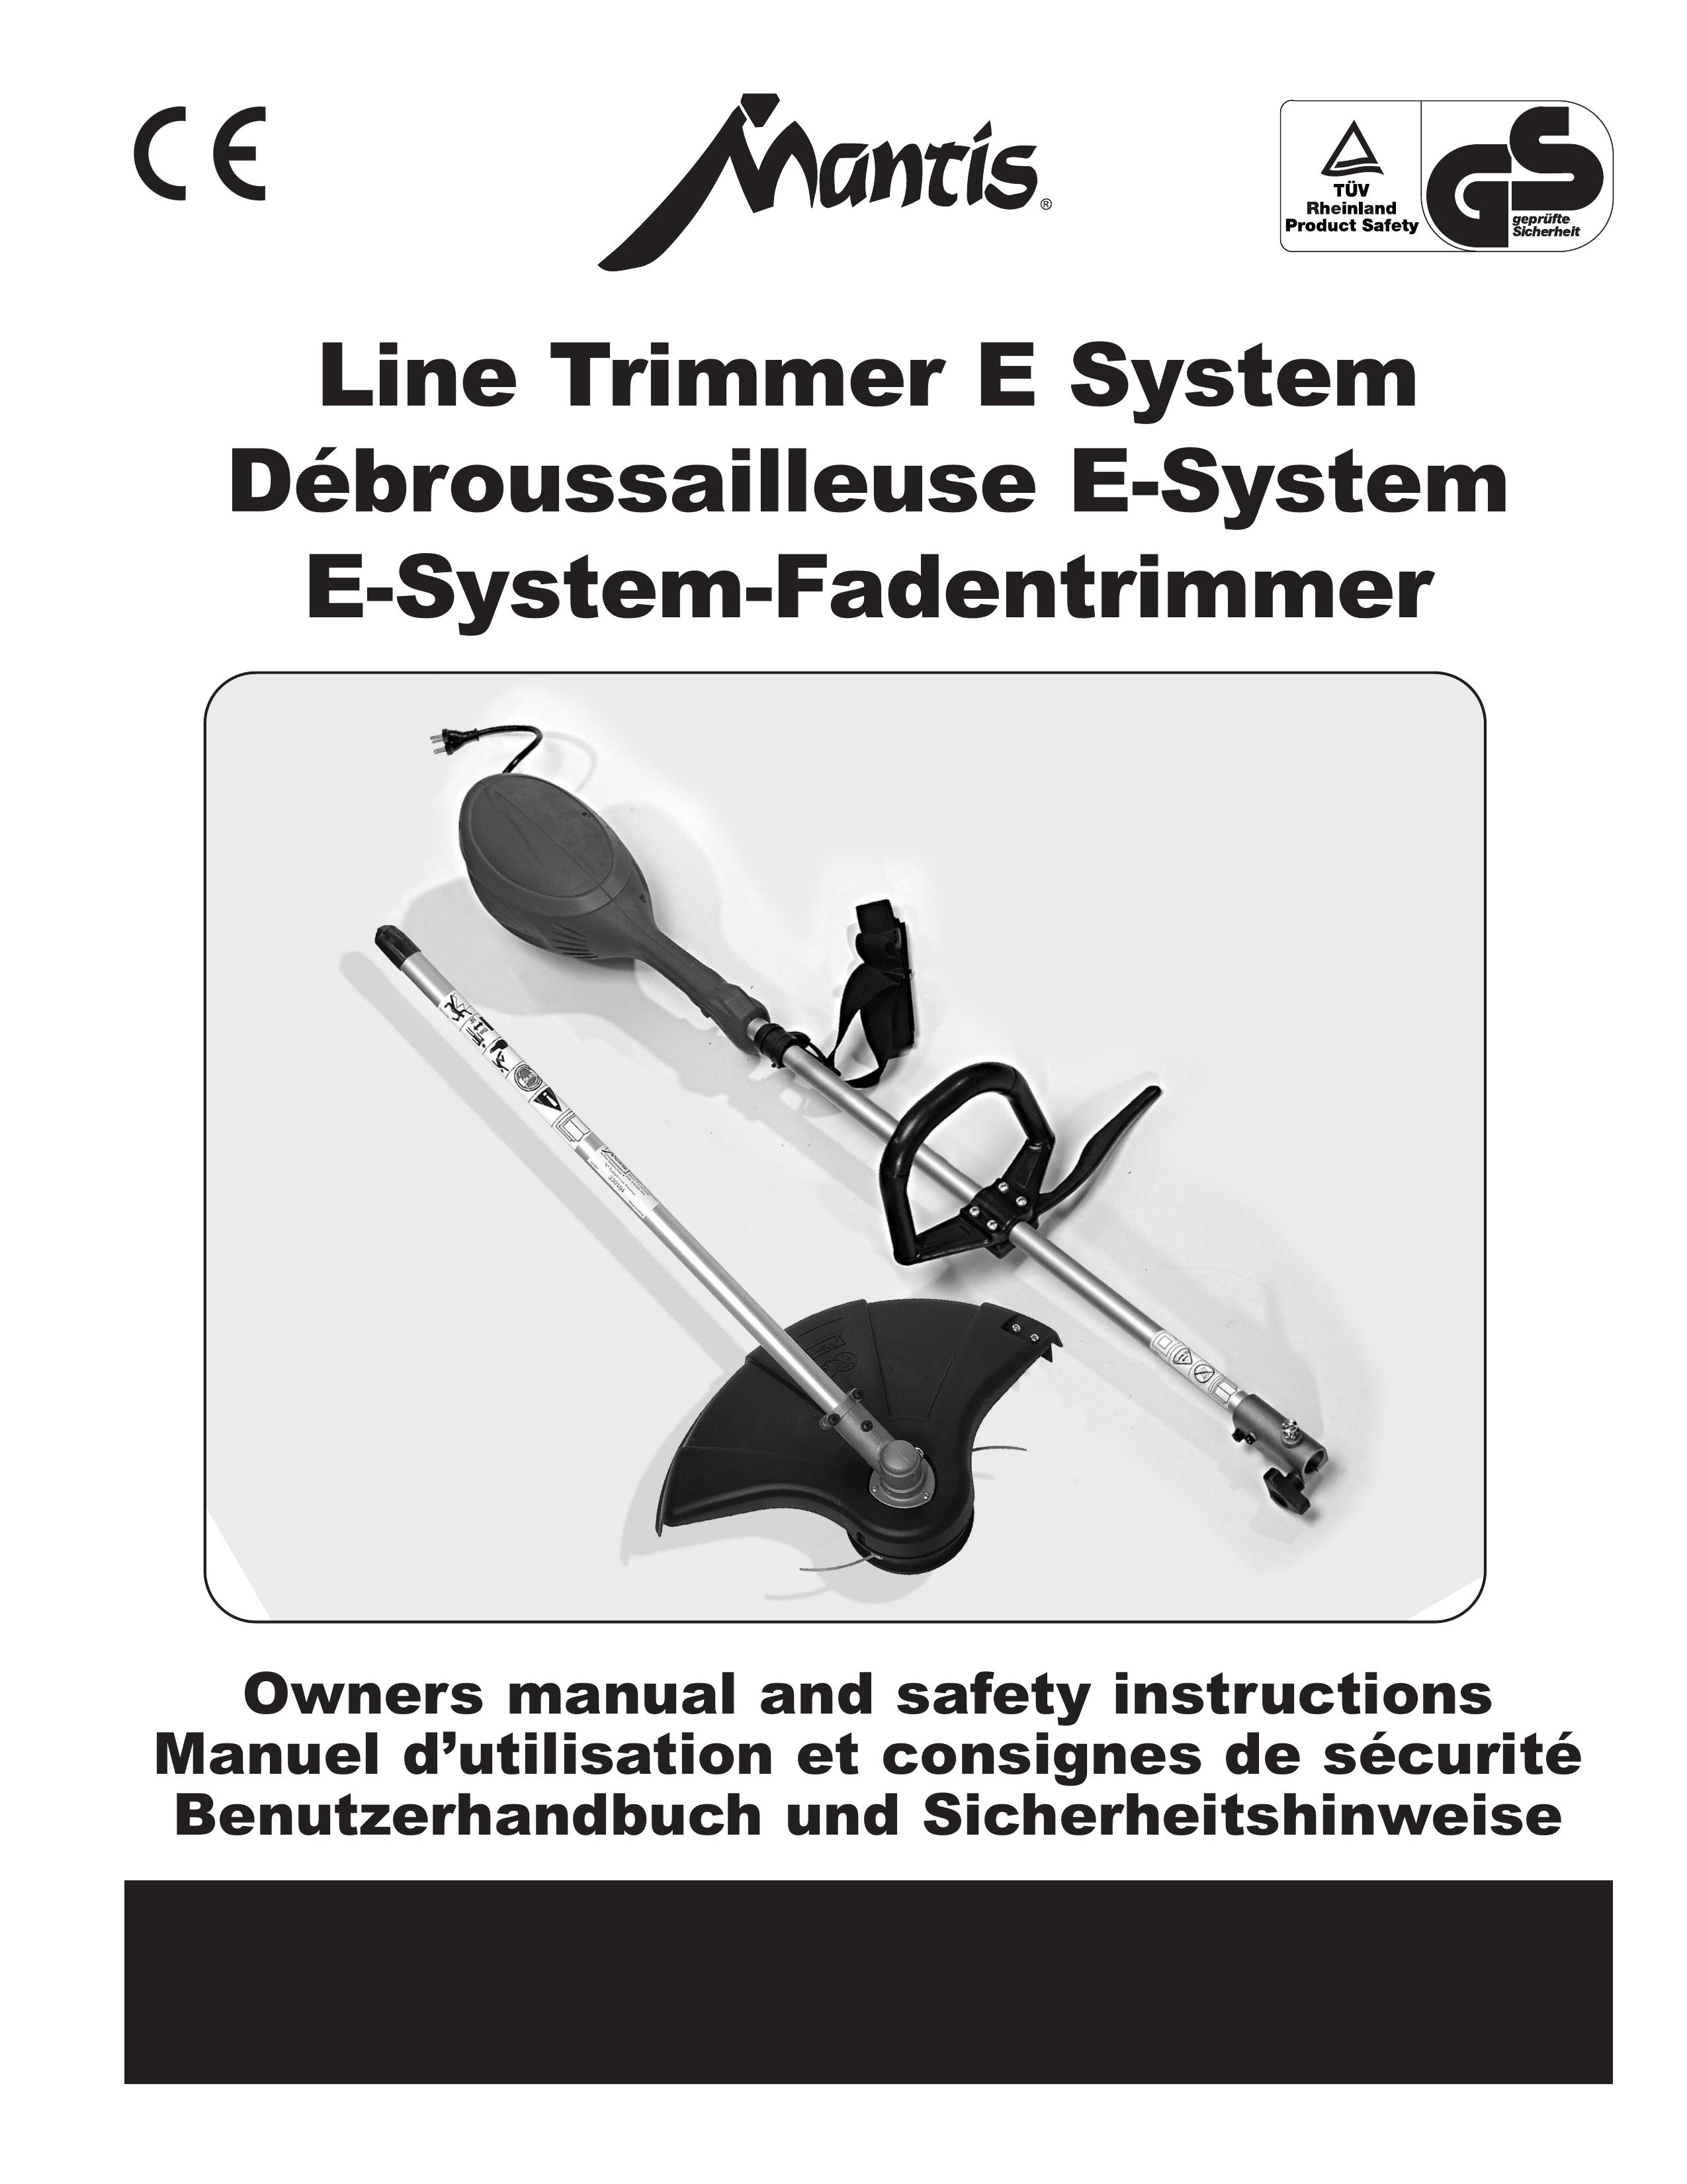 Little Wonder Line Trimmer Trimmer User Manual